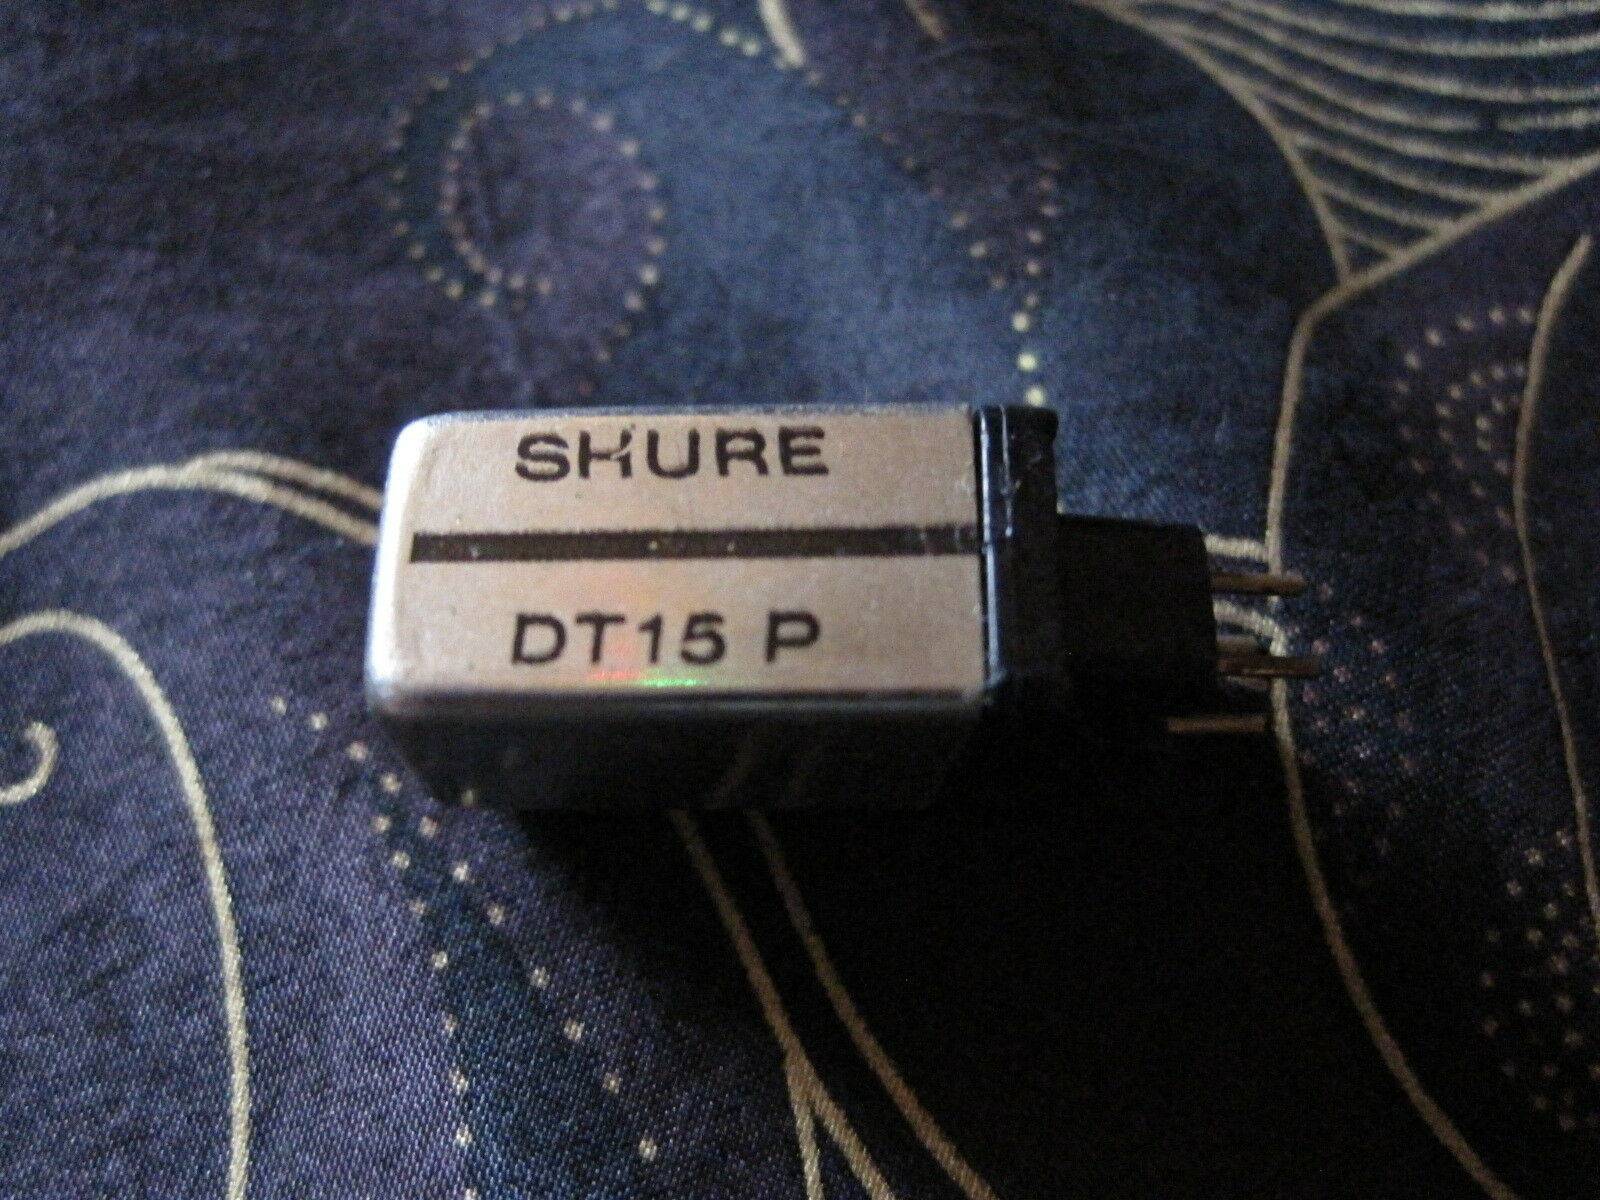 Shure (OEM) DT15 P